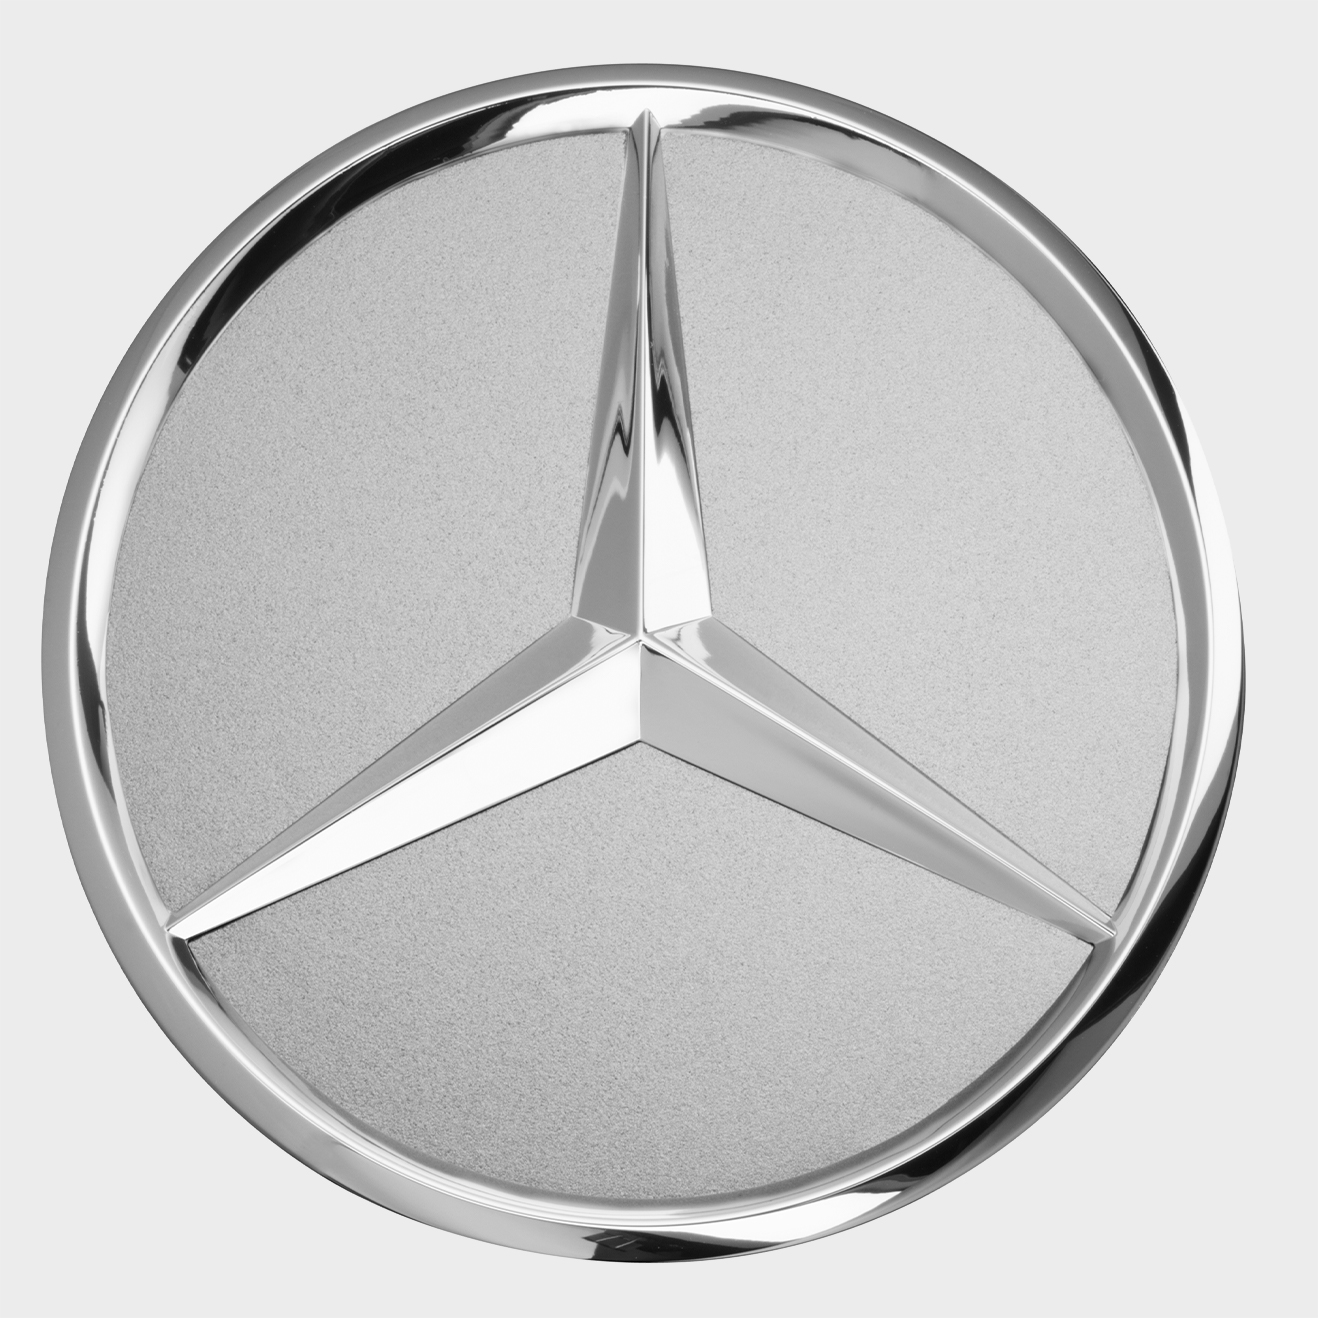 Mercedes-Benz Radnabenabdeckung, Stern erhaben